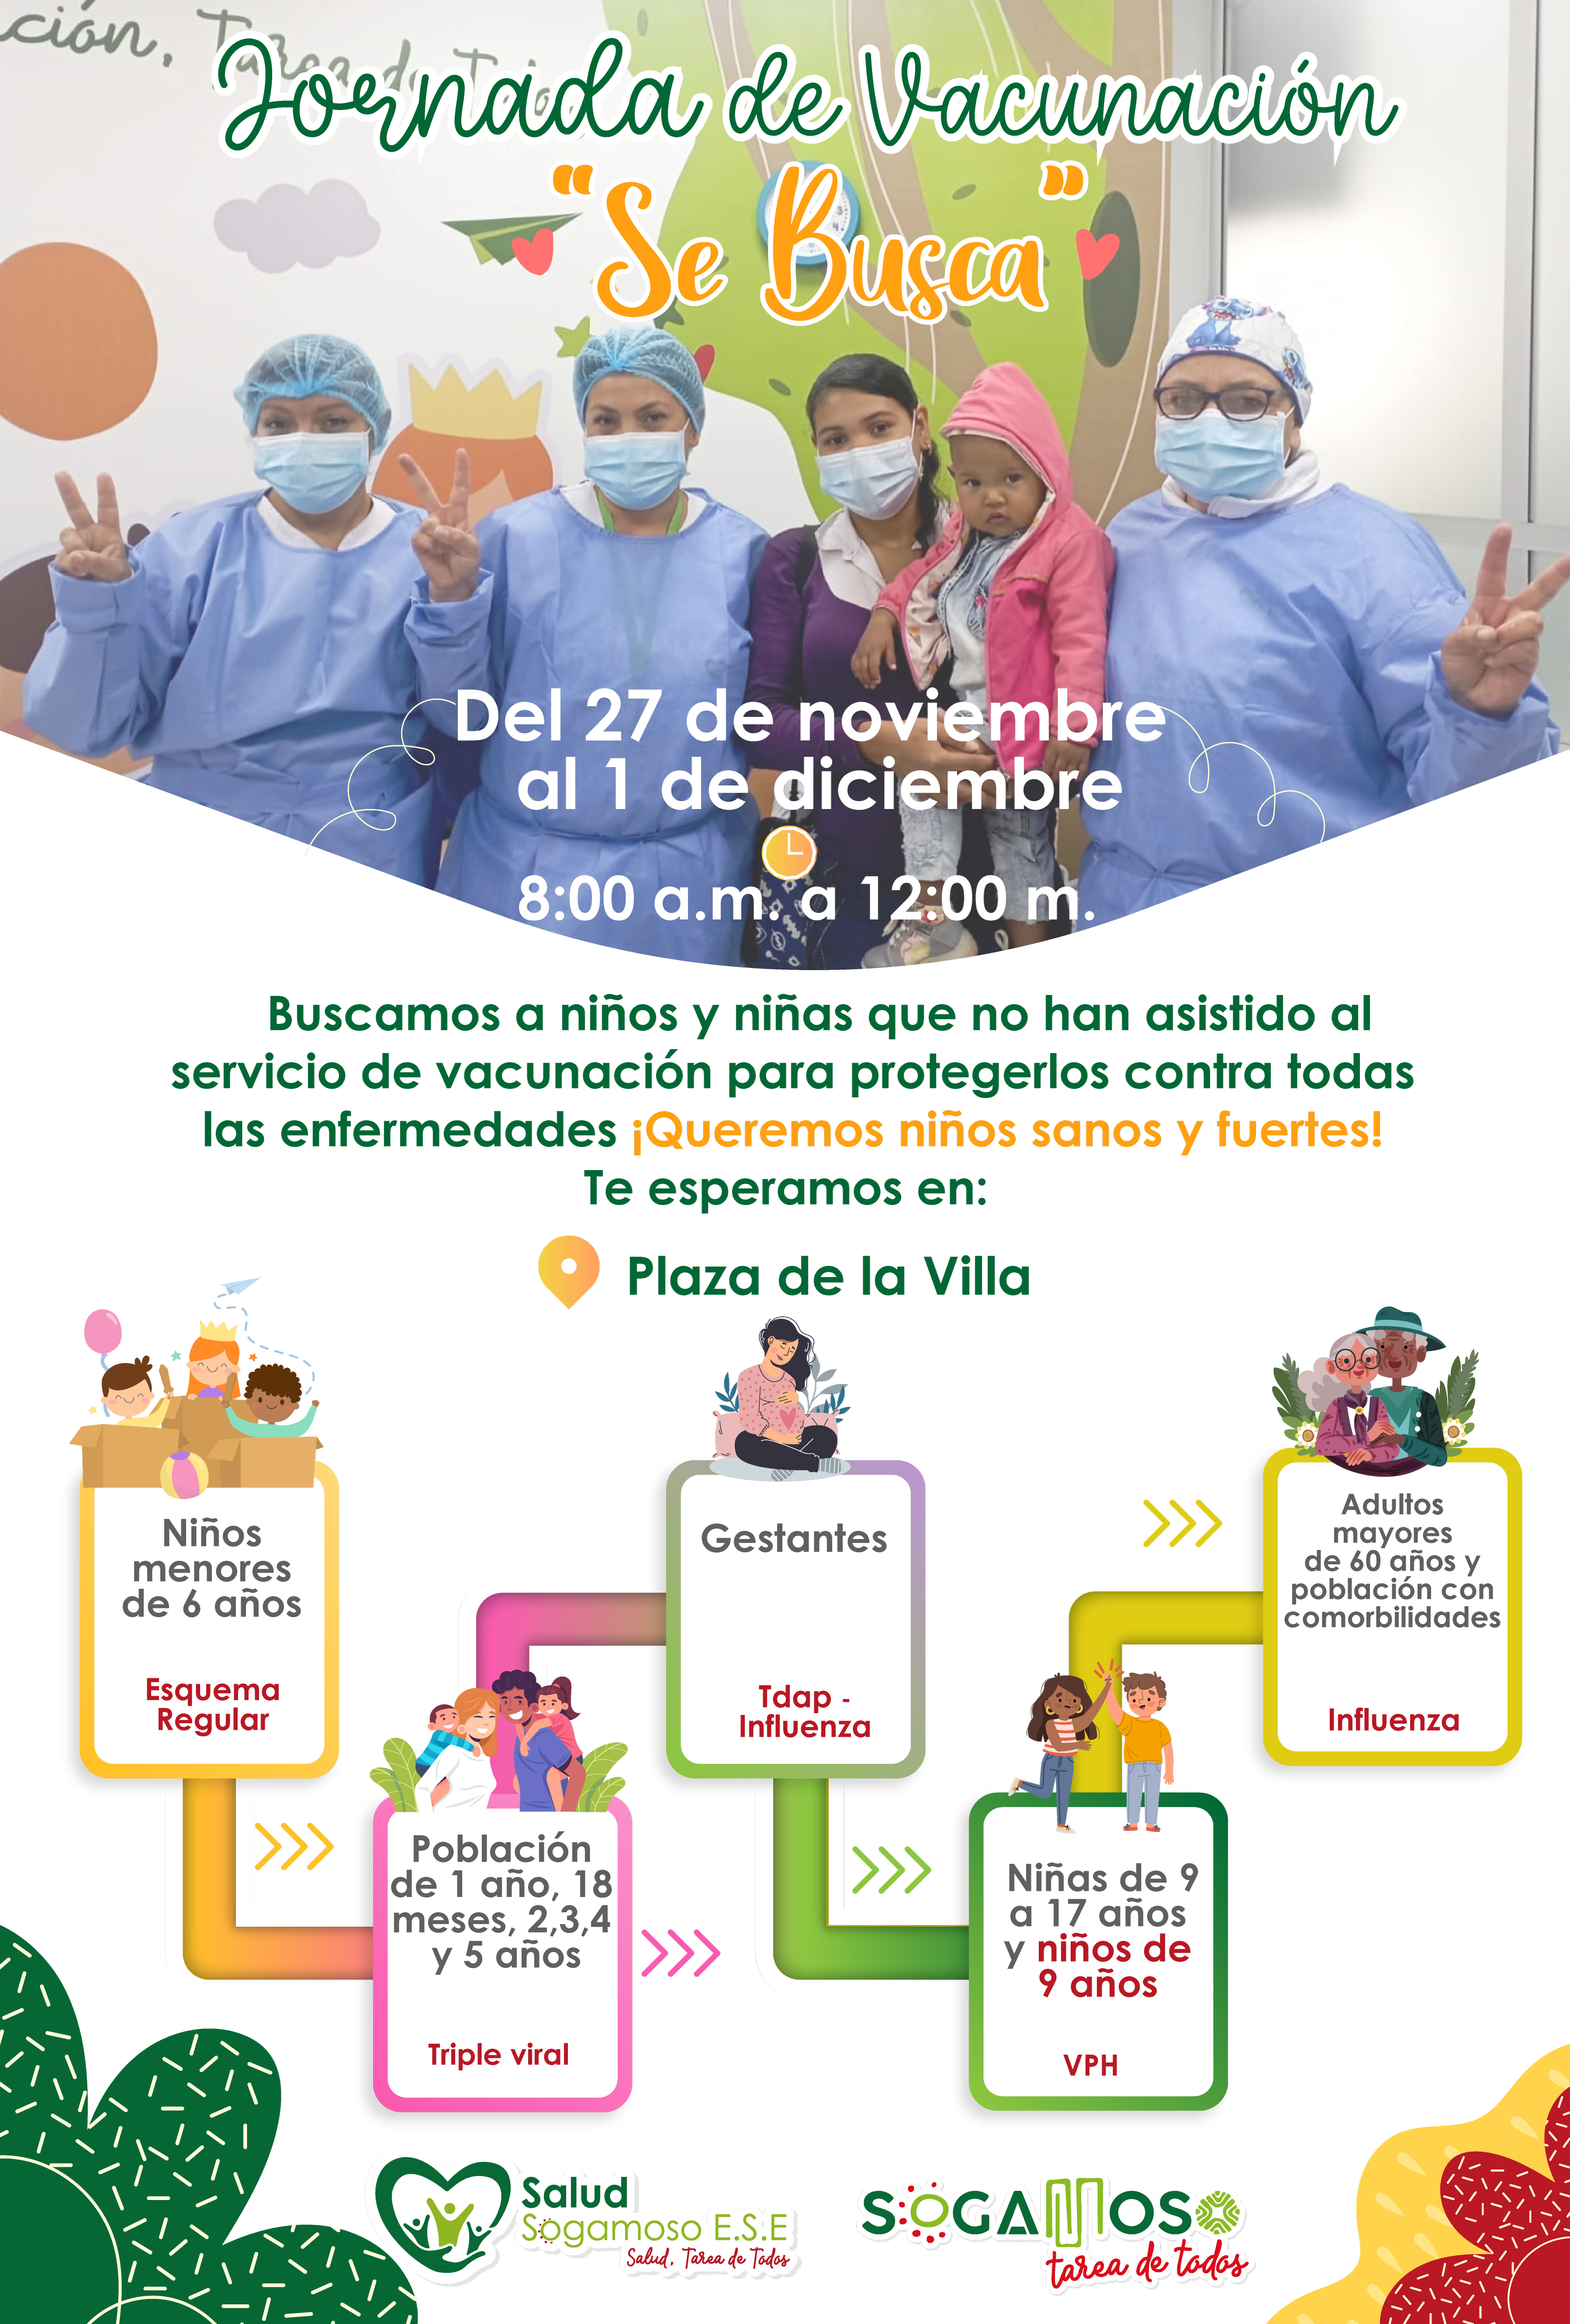 Del 27 de noviembre al 1 de diciembre, Salud Sogamoso ESE te invita a la Jornada de Vacunación” Se busca”.